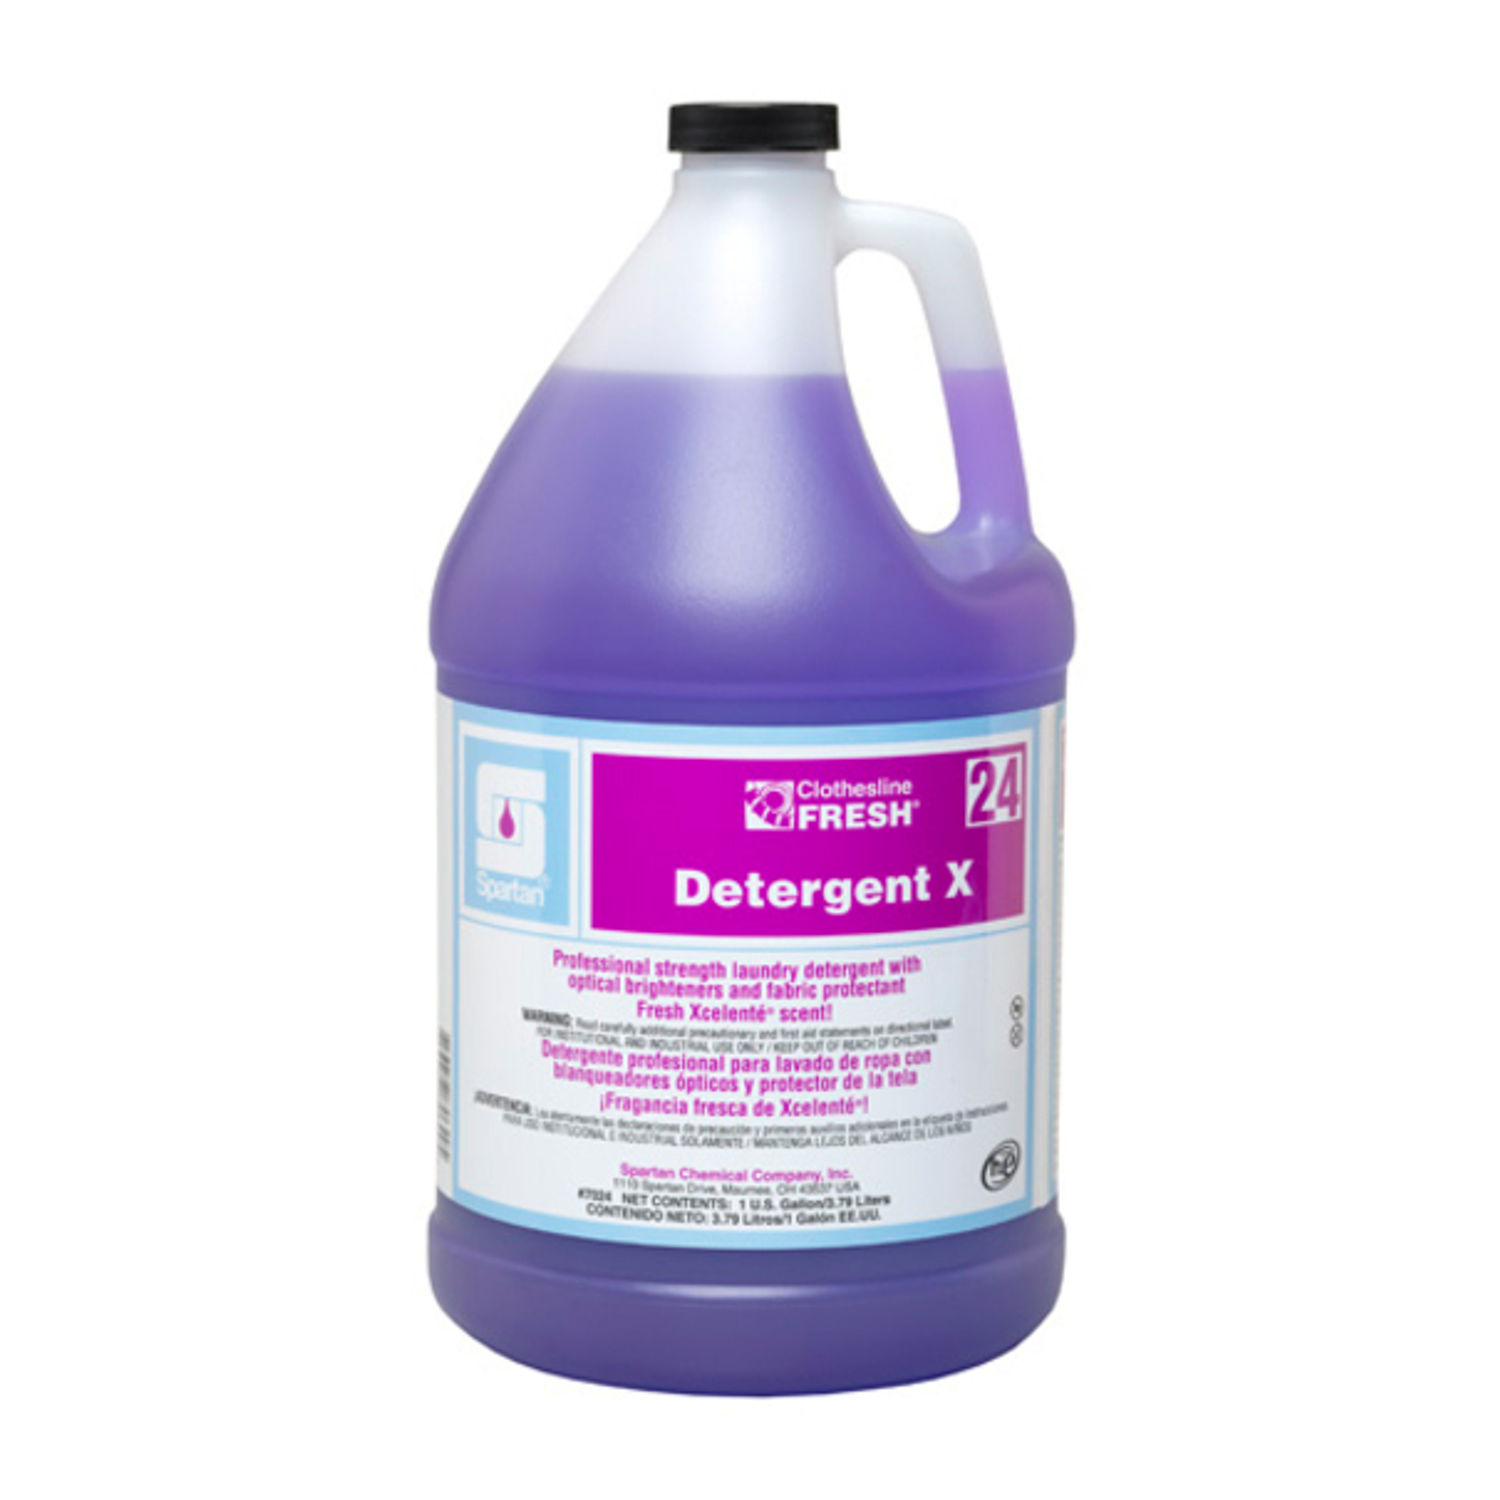 Clothesline Fresh Detergent X 24 Concentrate Liquid, 640 fl oz (20 quart), Fresh Lavender Scent, 4 / Case, Purple